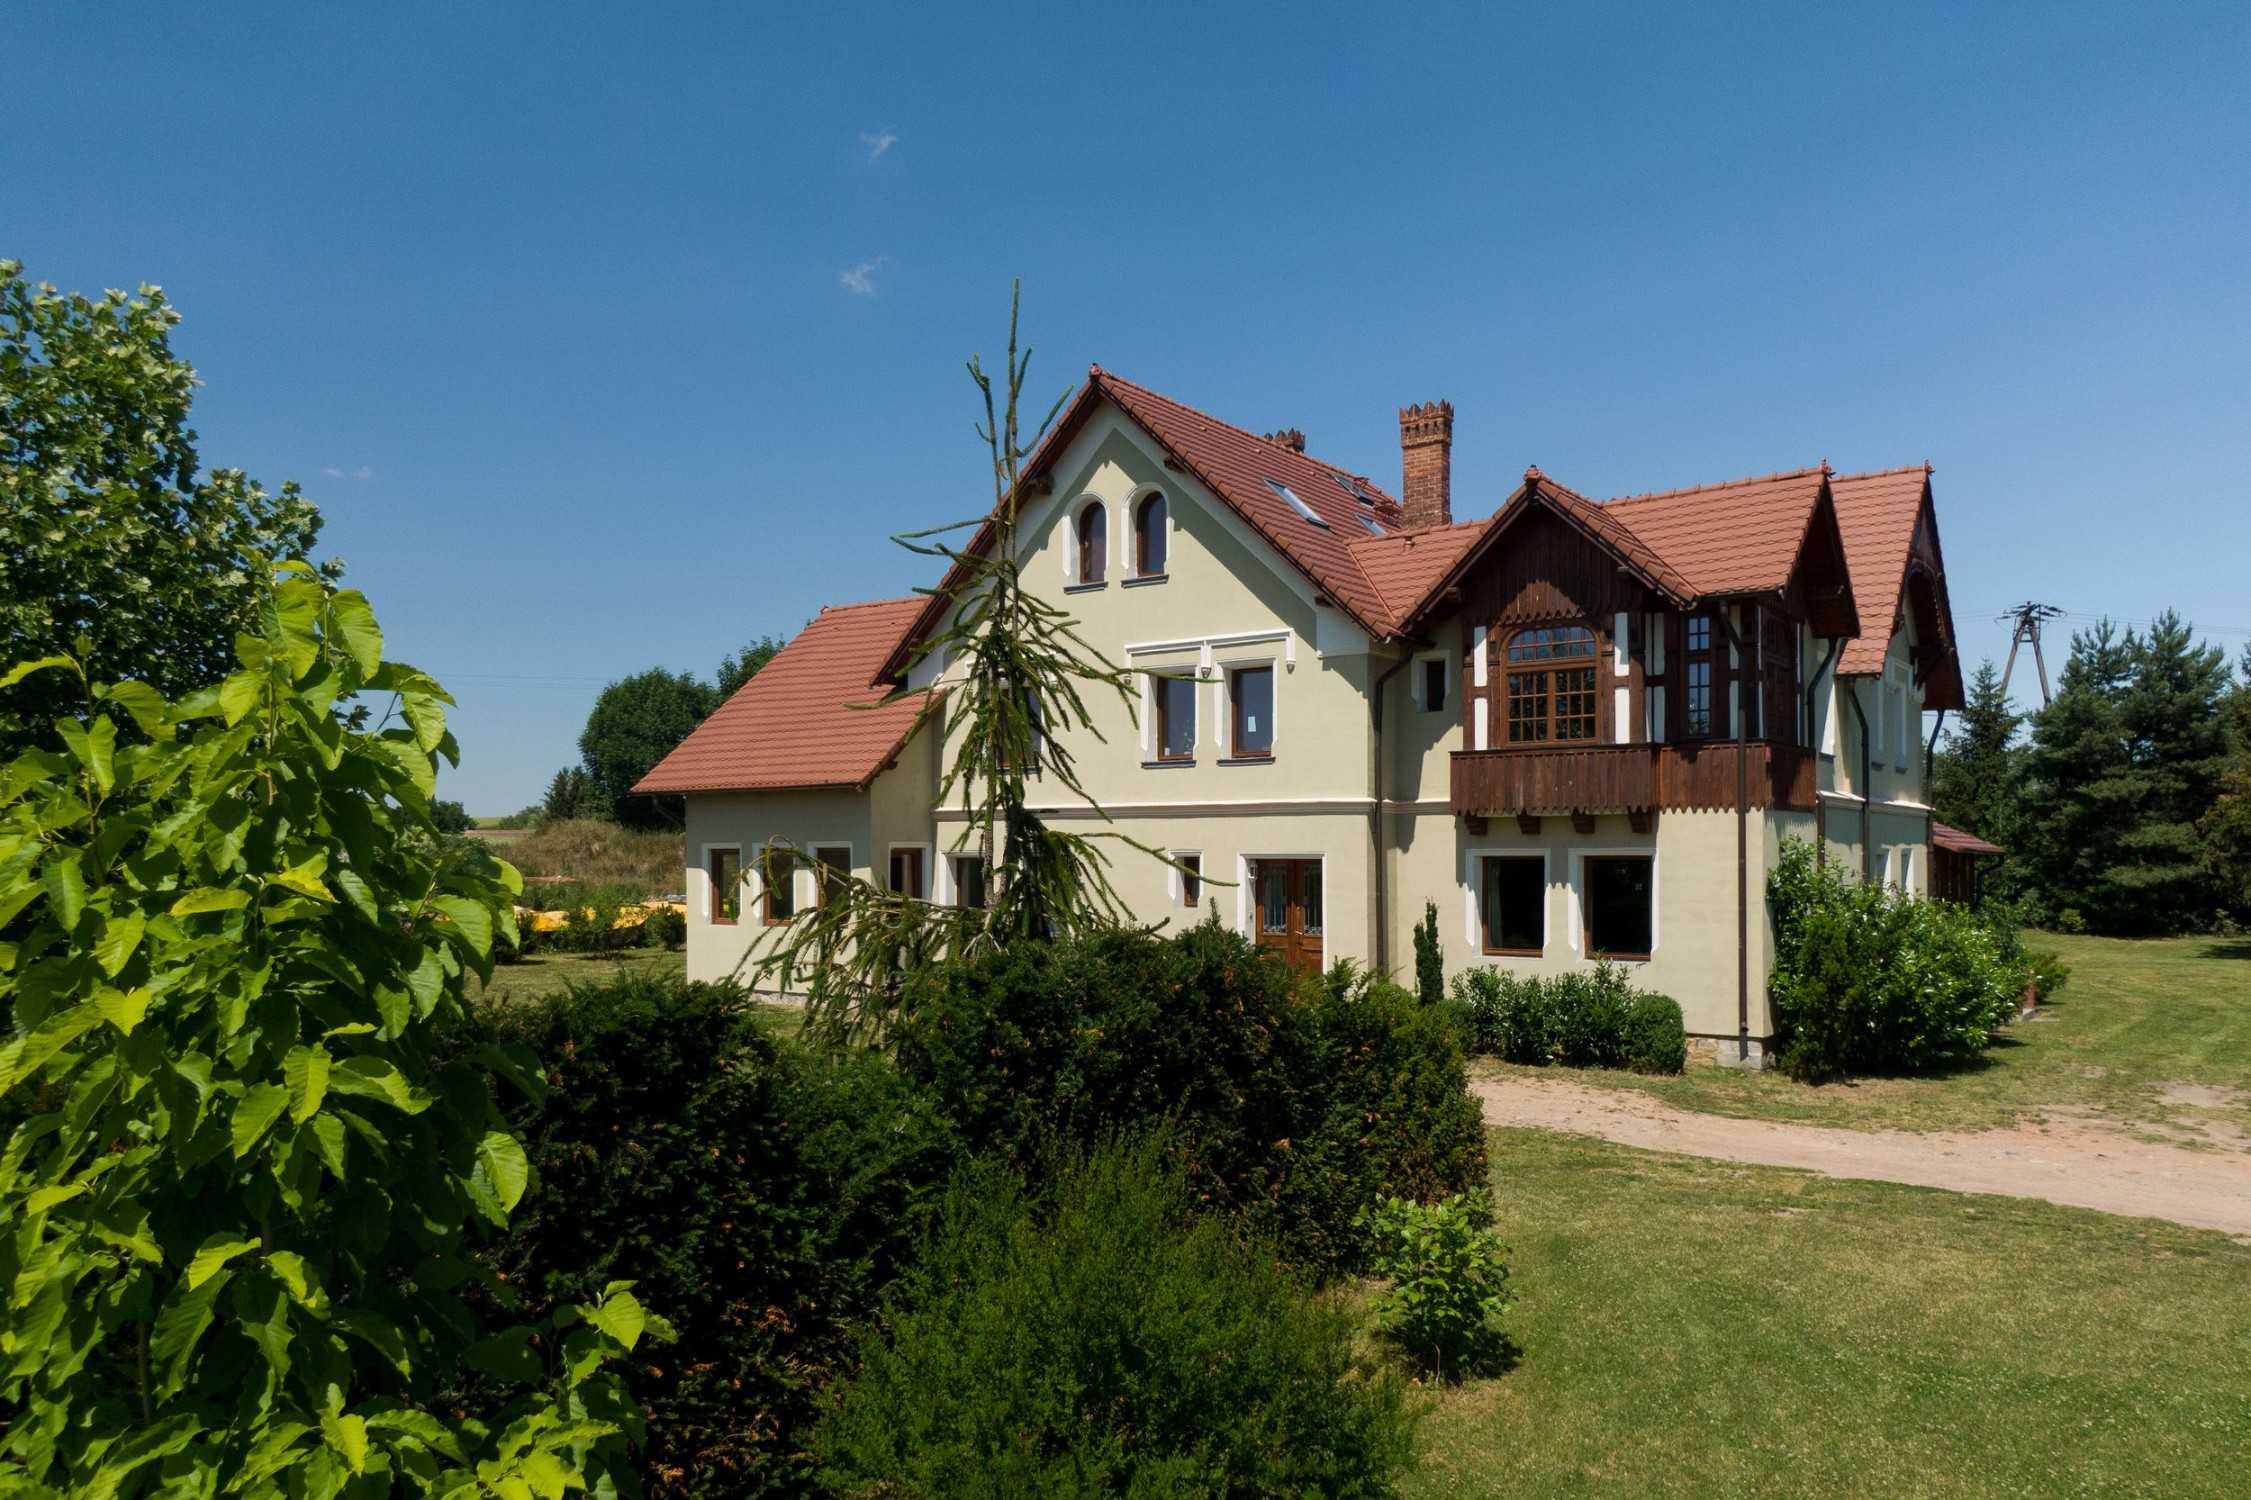 Immagini Villa storica in Bassa Slesia vicino a Breslavia